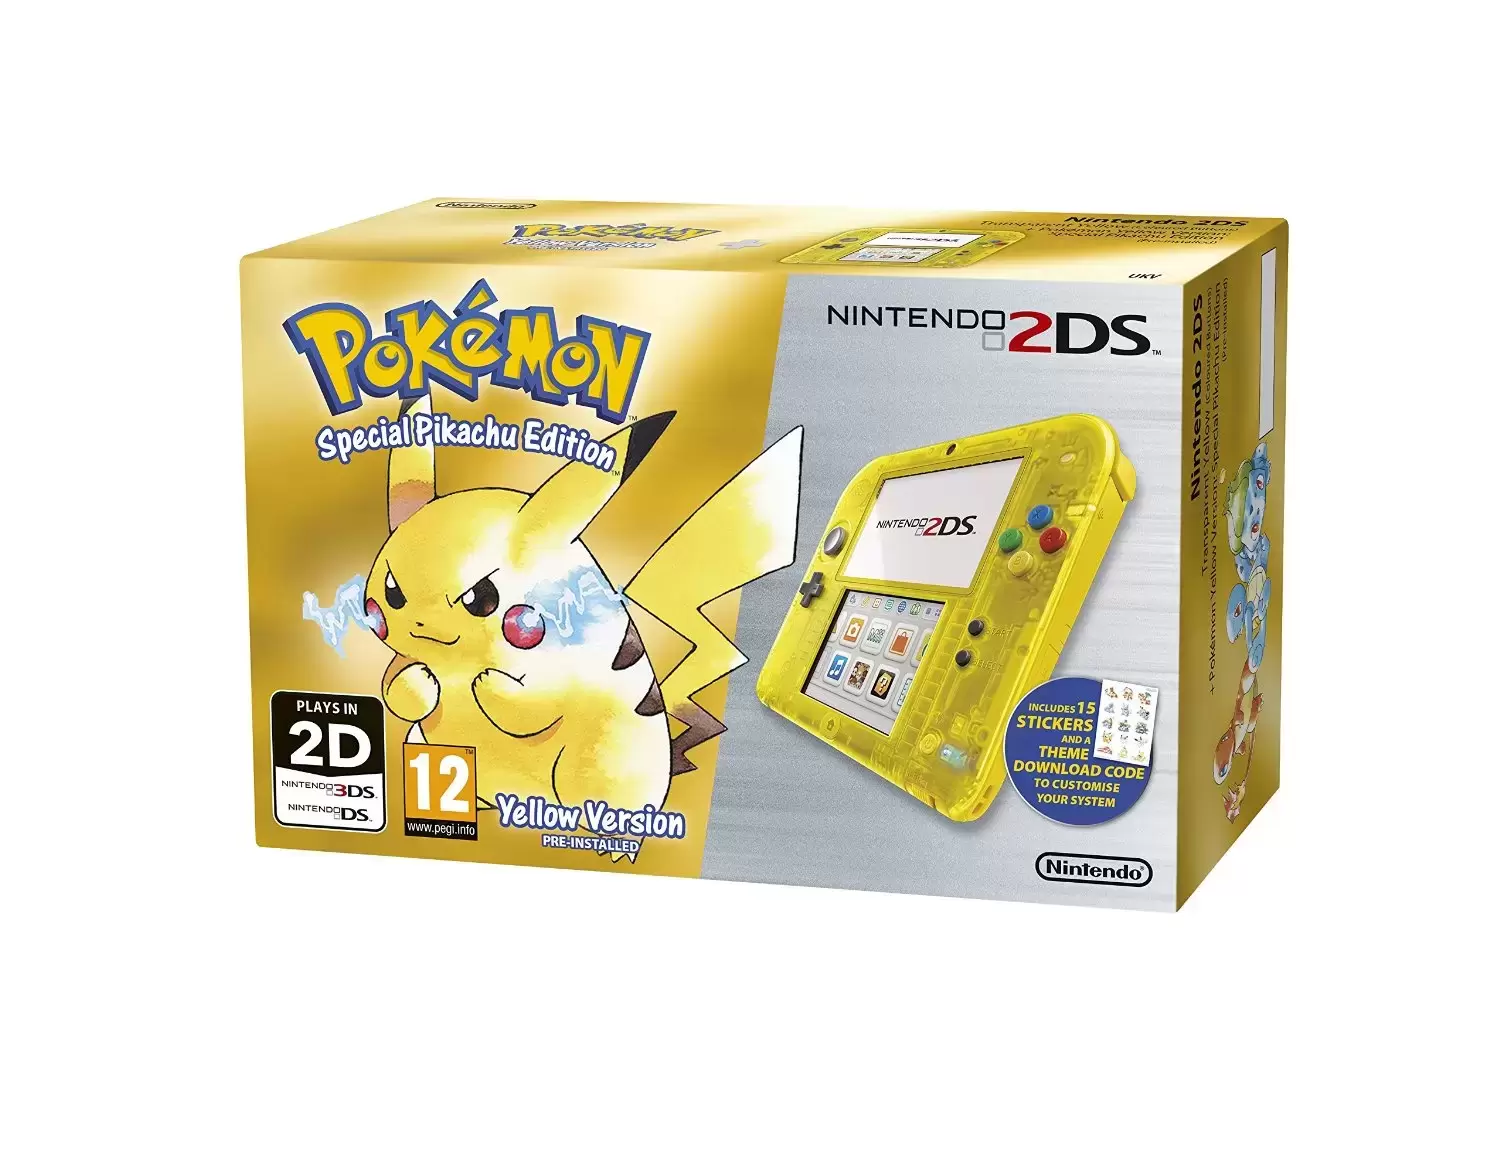 Matériel Nintendo 2DS - Nintendo 2DS Pokémon Version Jaune